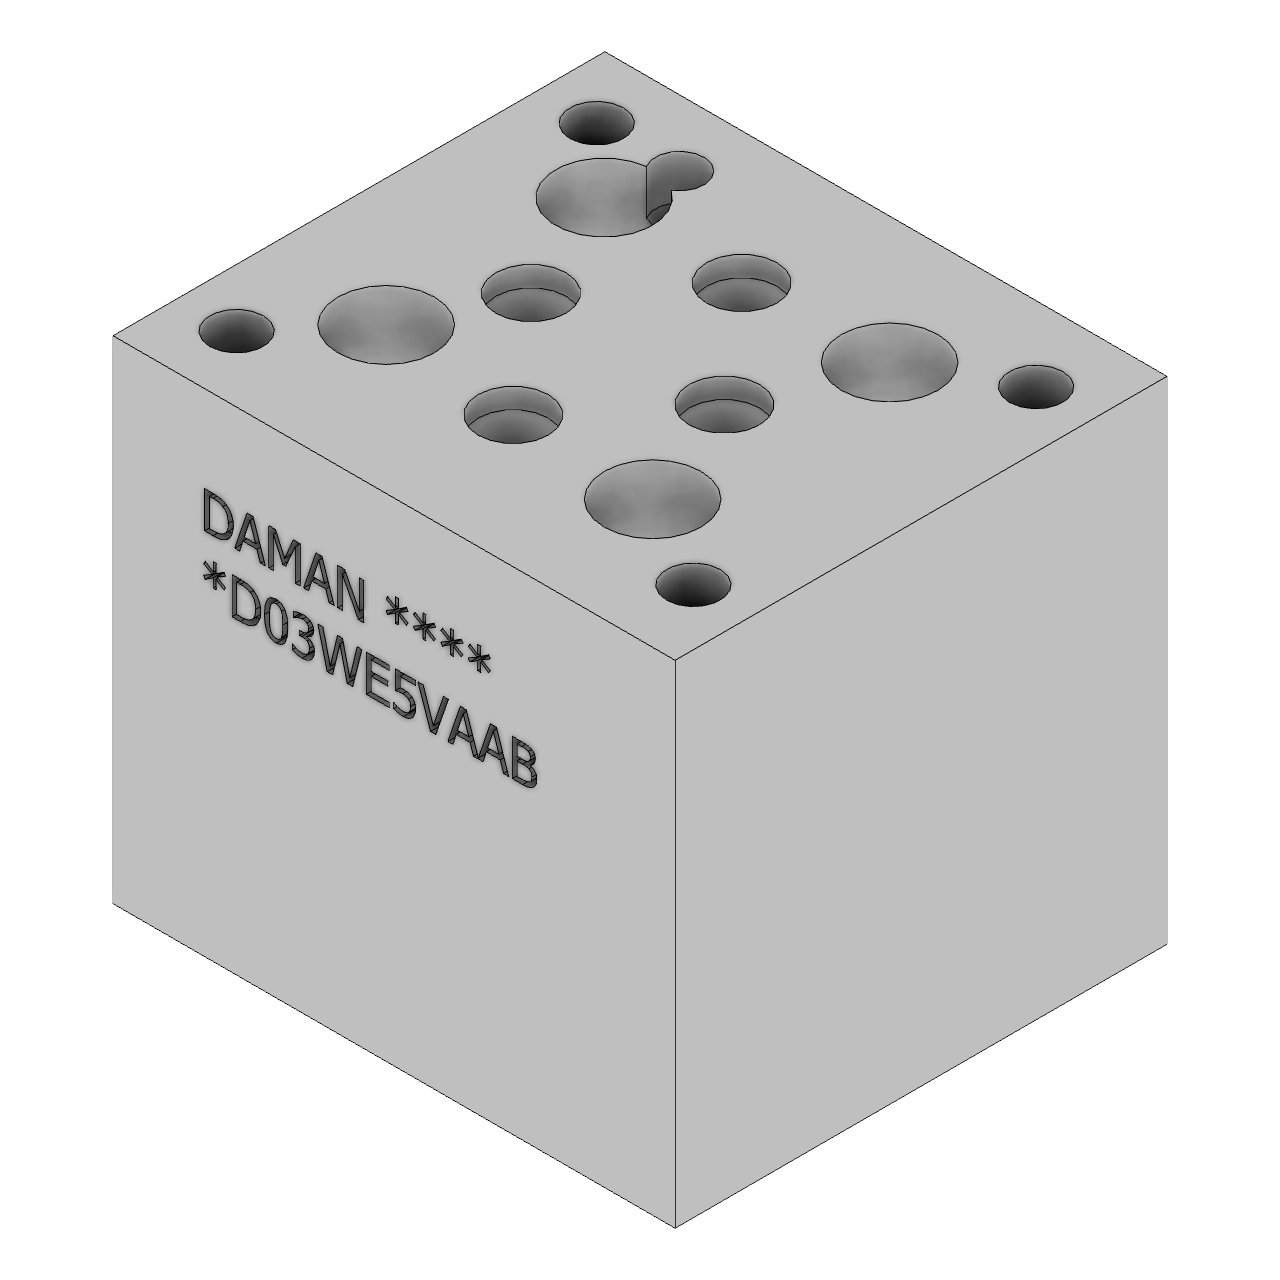 DD03WE5VAAB - Valve Adaptors